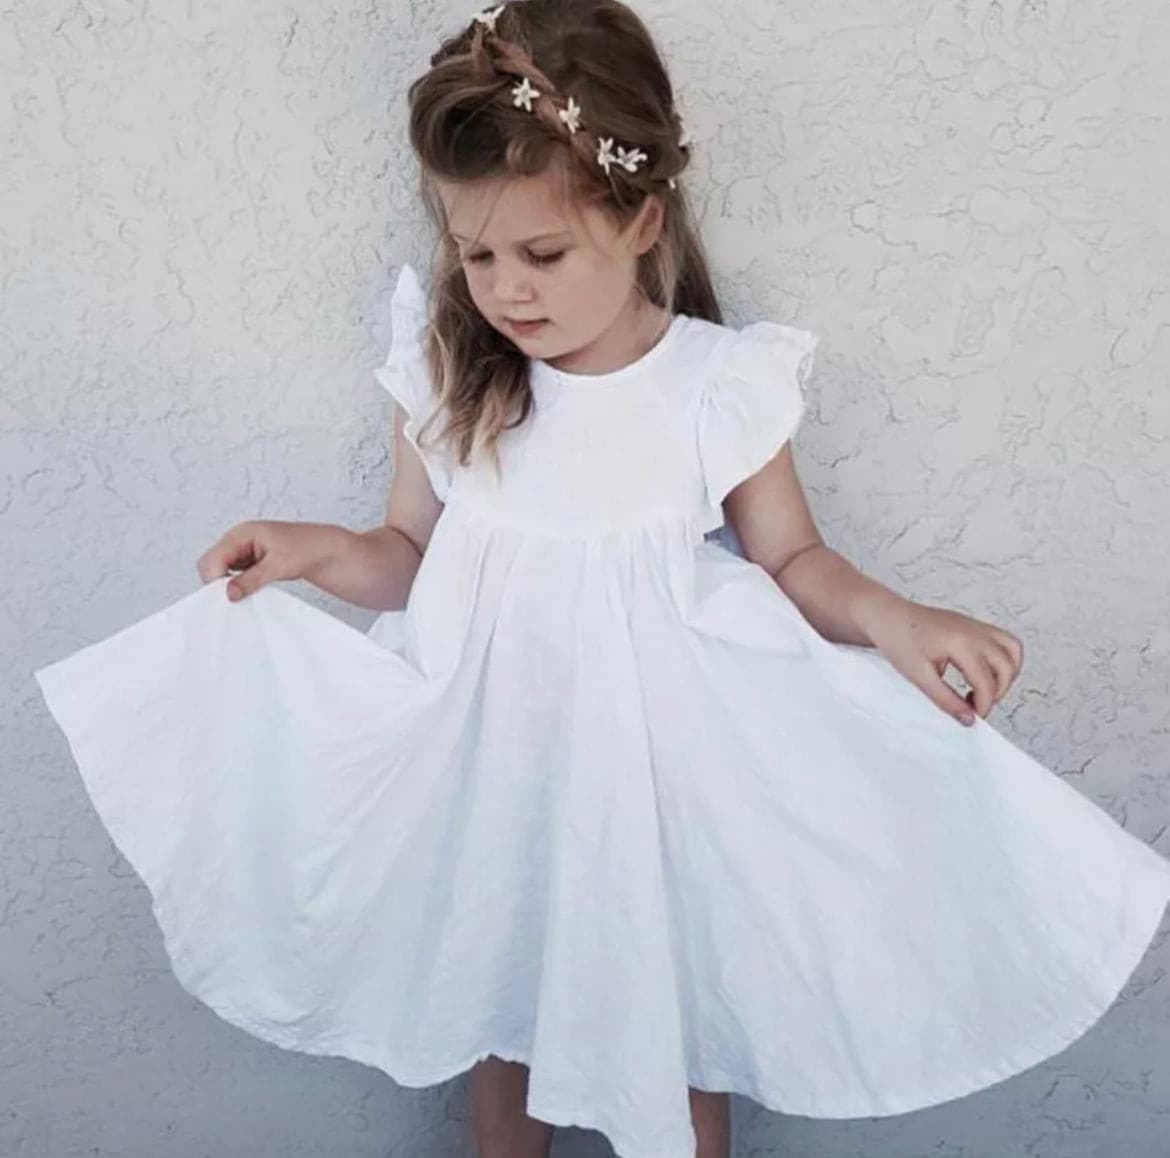 Rosie Ruffle Dress  - White.